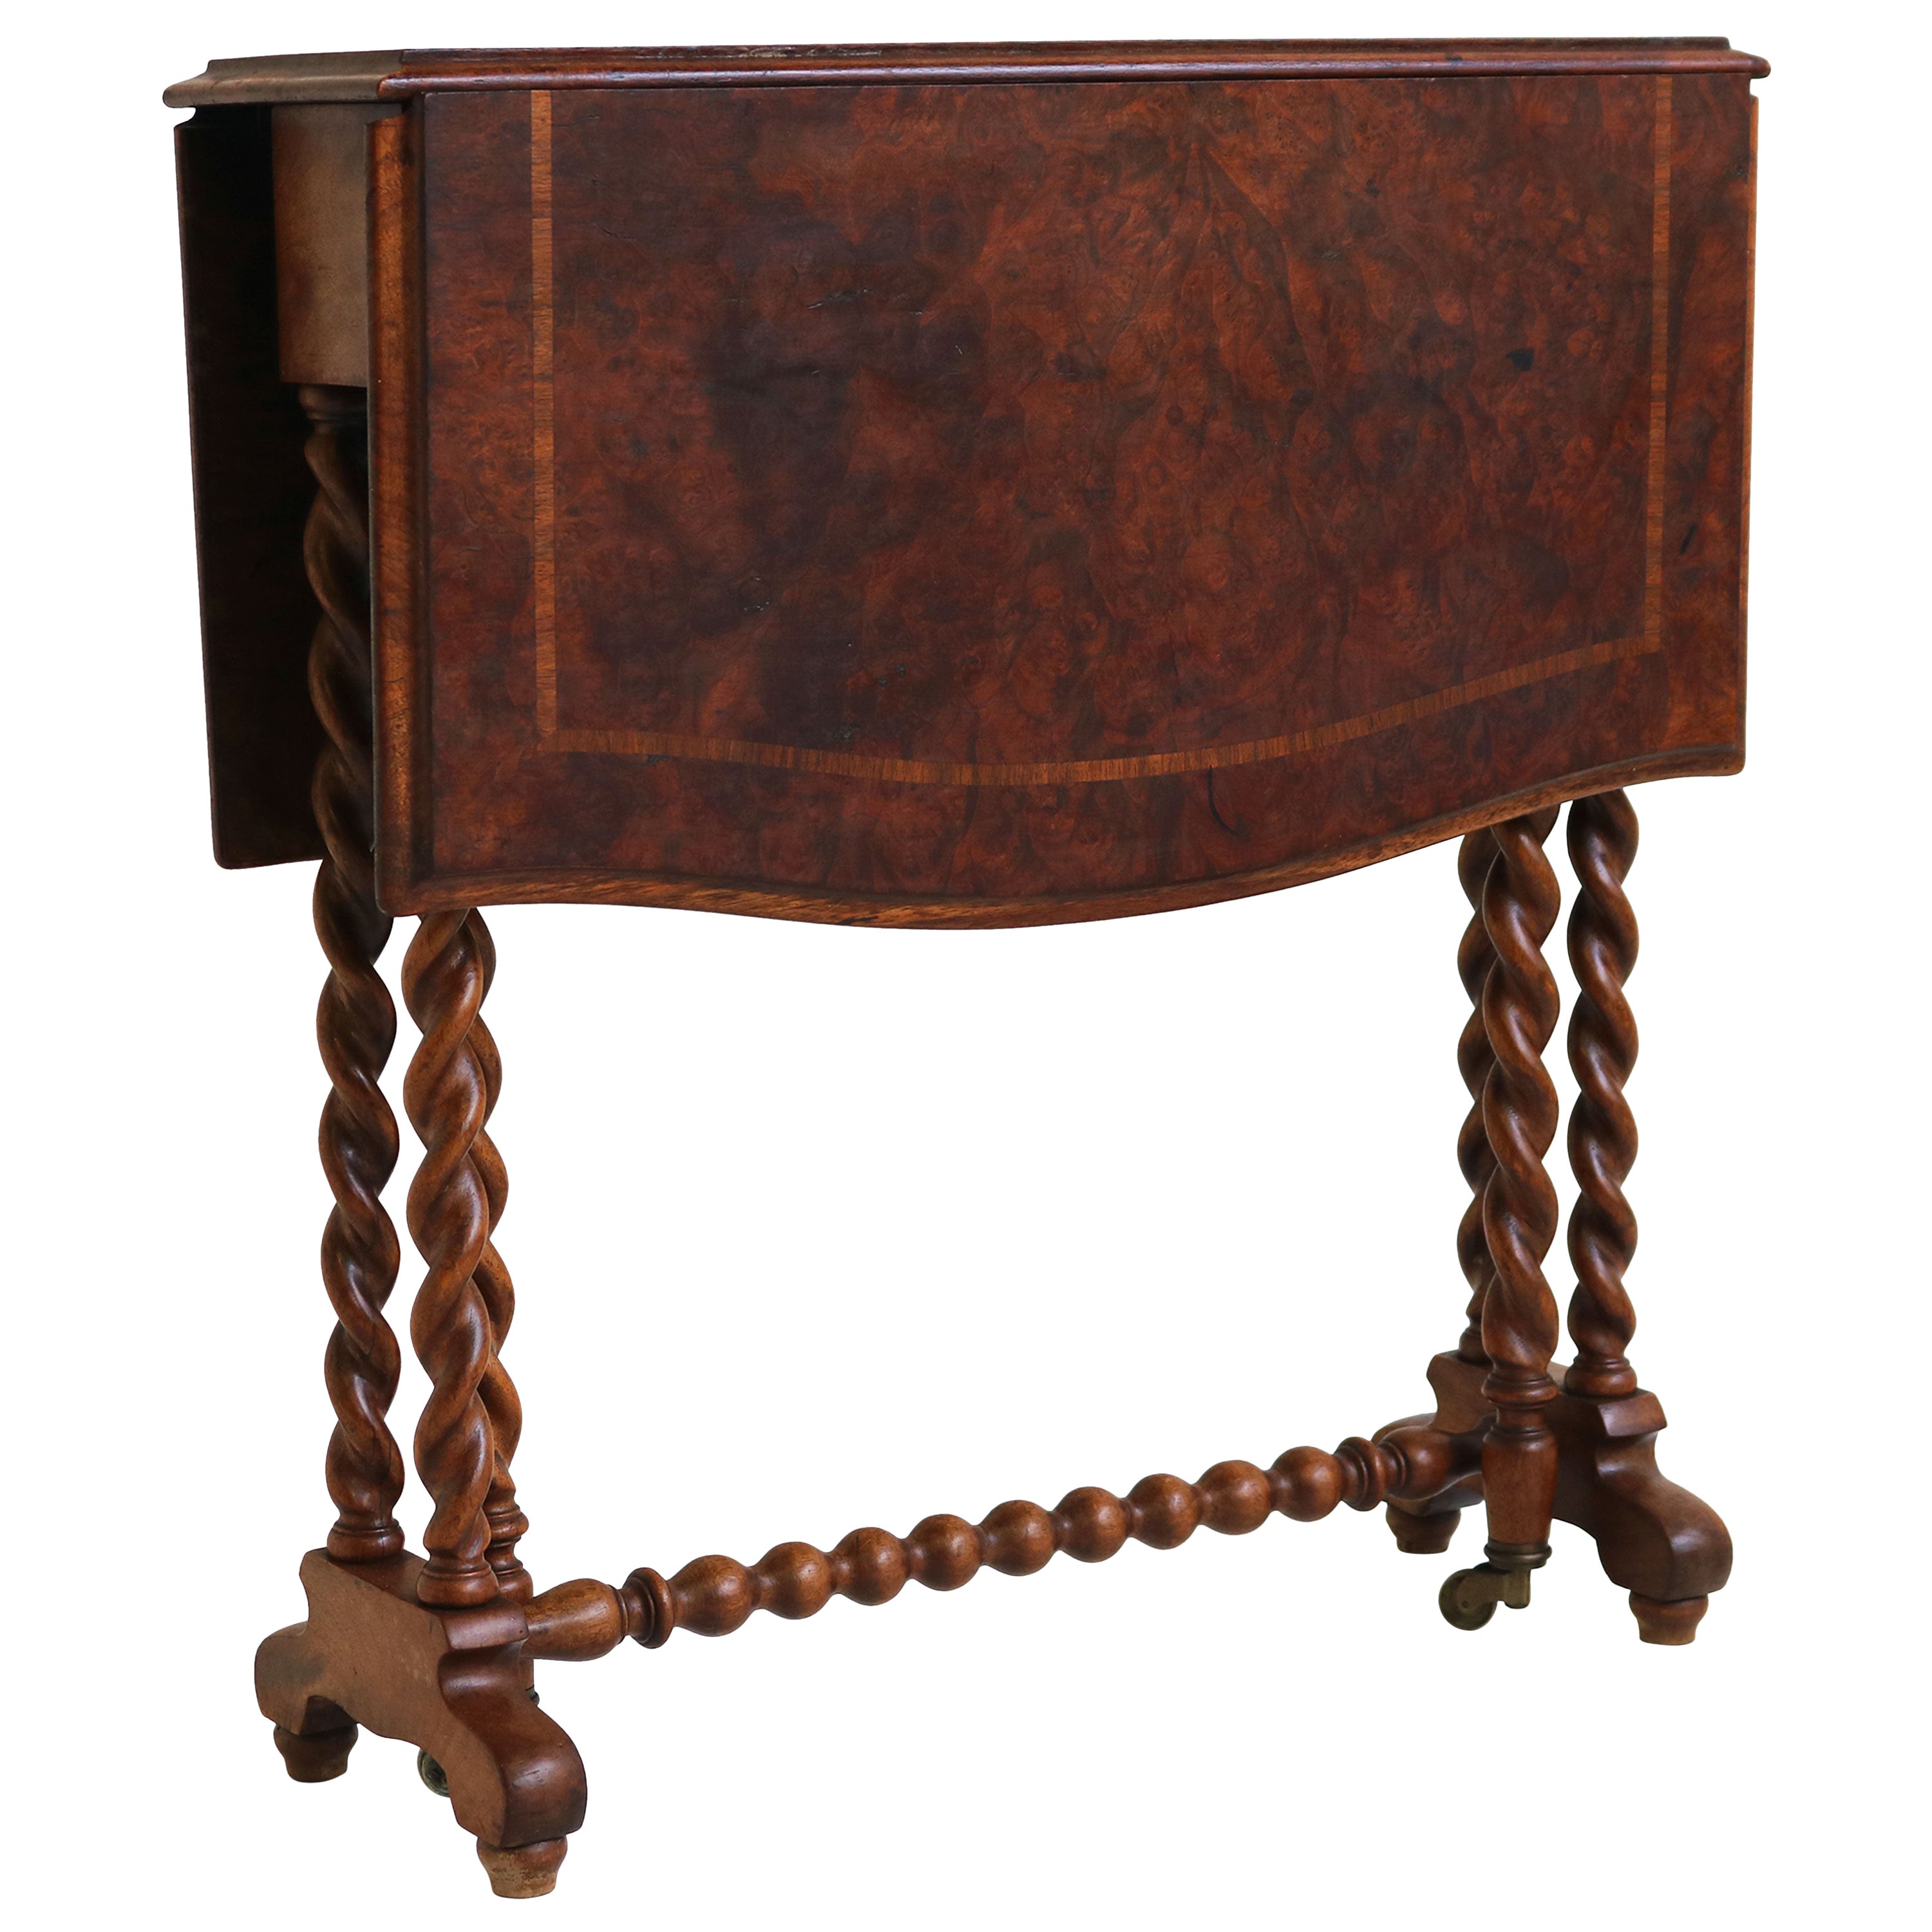 Antique table pliante anglaise en ronce d'orge / Gate-Leg Table 19ème siècle